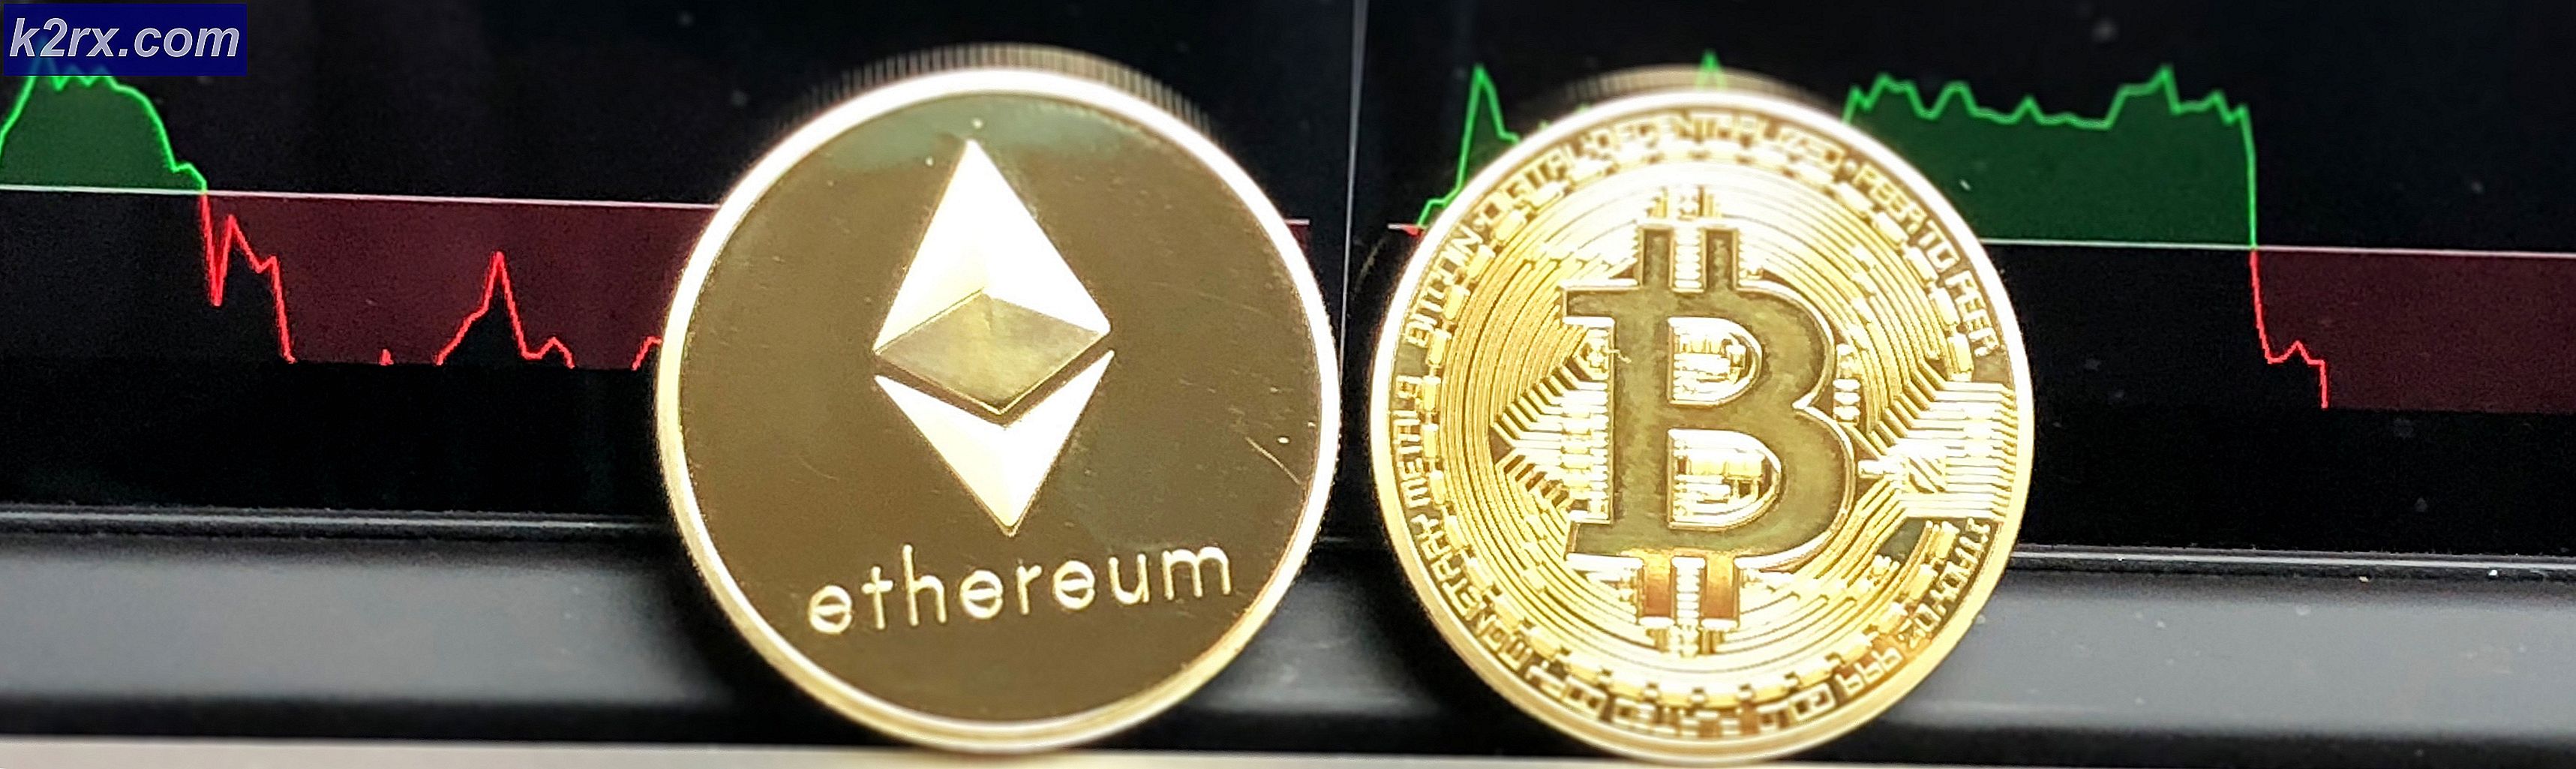 Ethereum vs Bitcoin: grundlegende Gemeinsamkeiten